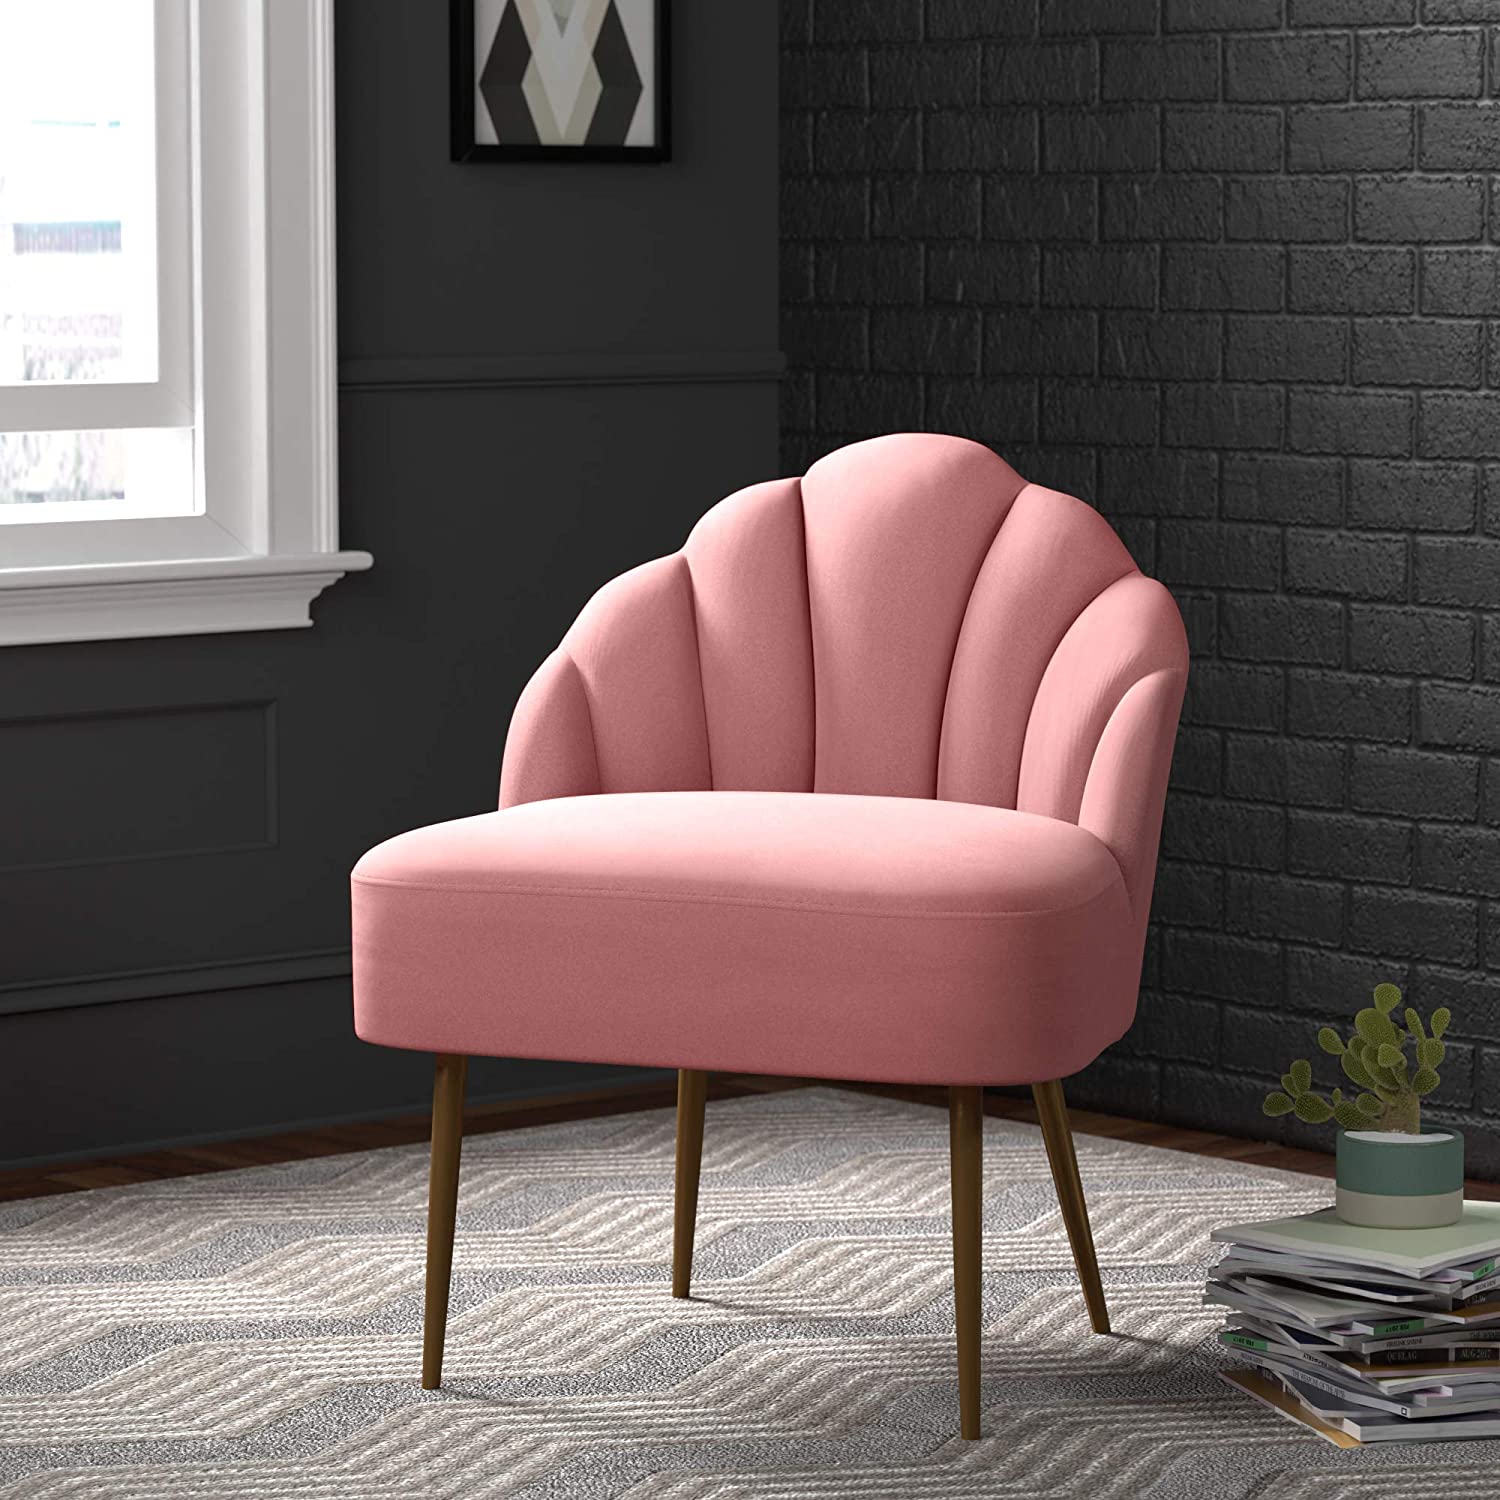 Sofa Chair Rose Teal Set Gkw Retail